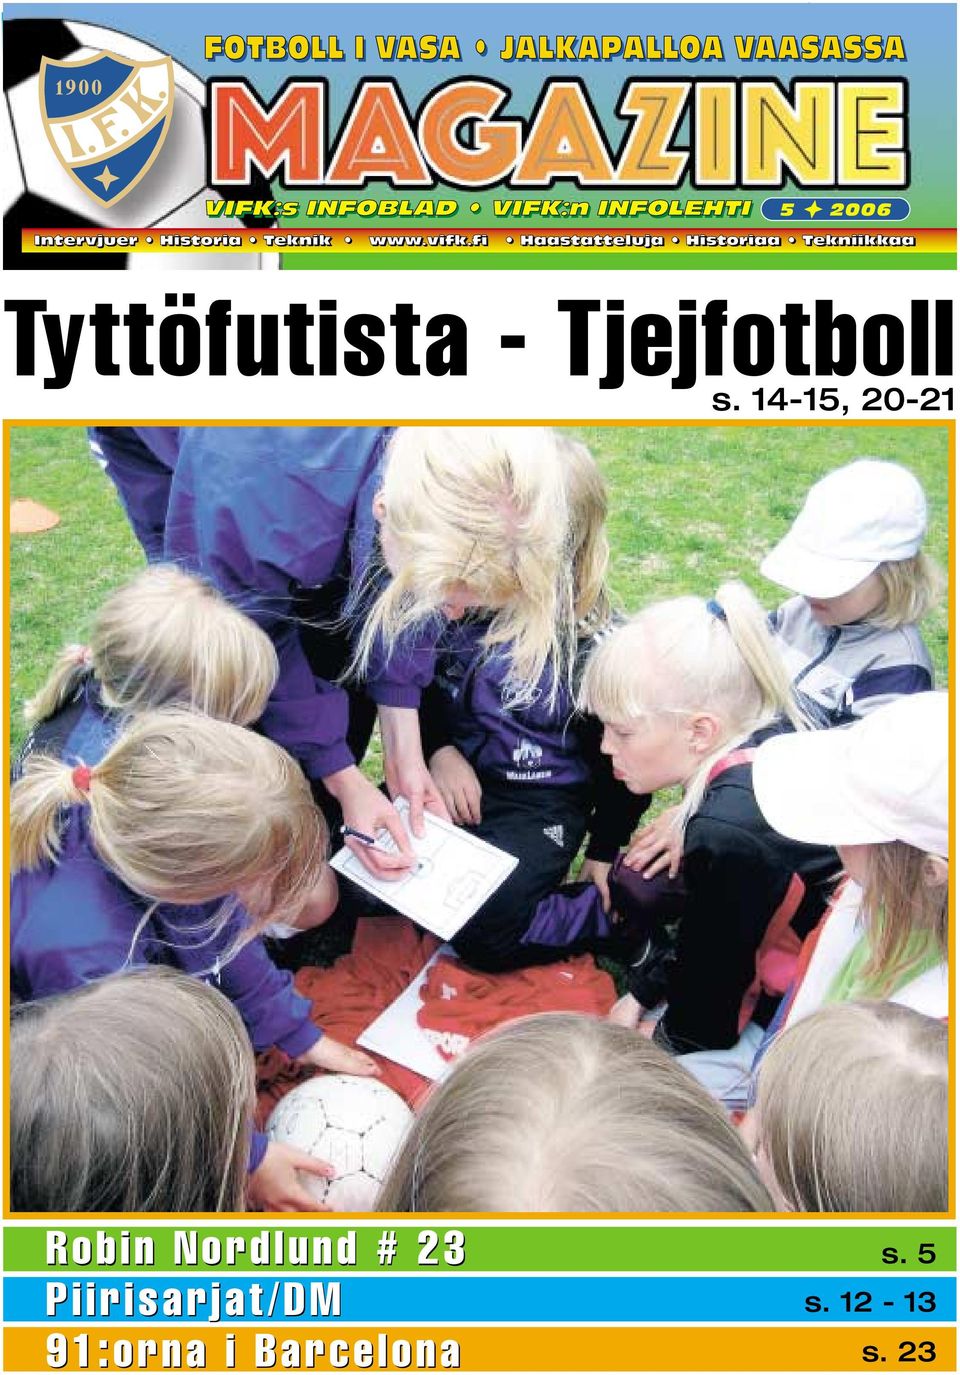 Tyttöfutista - Tjejfotboll s.